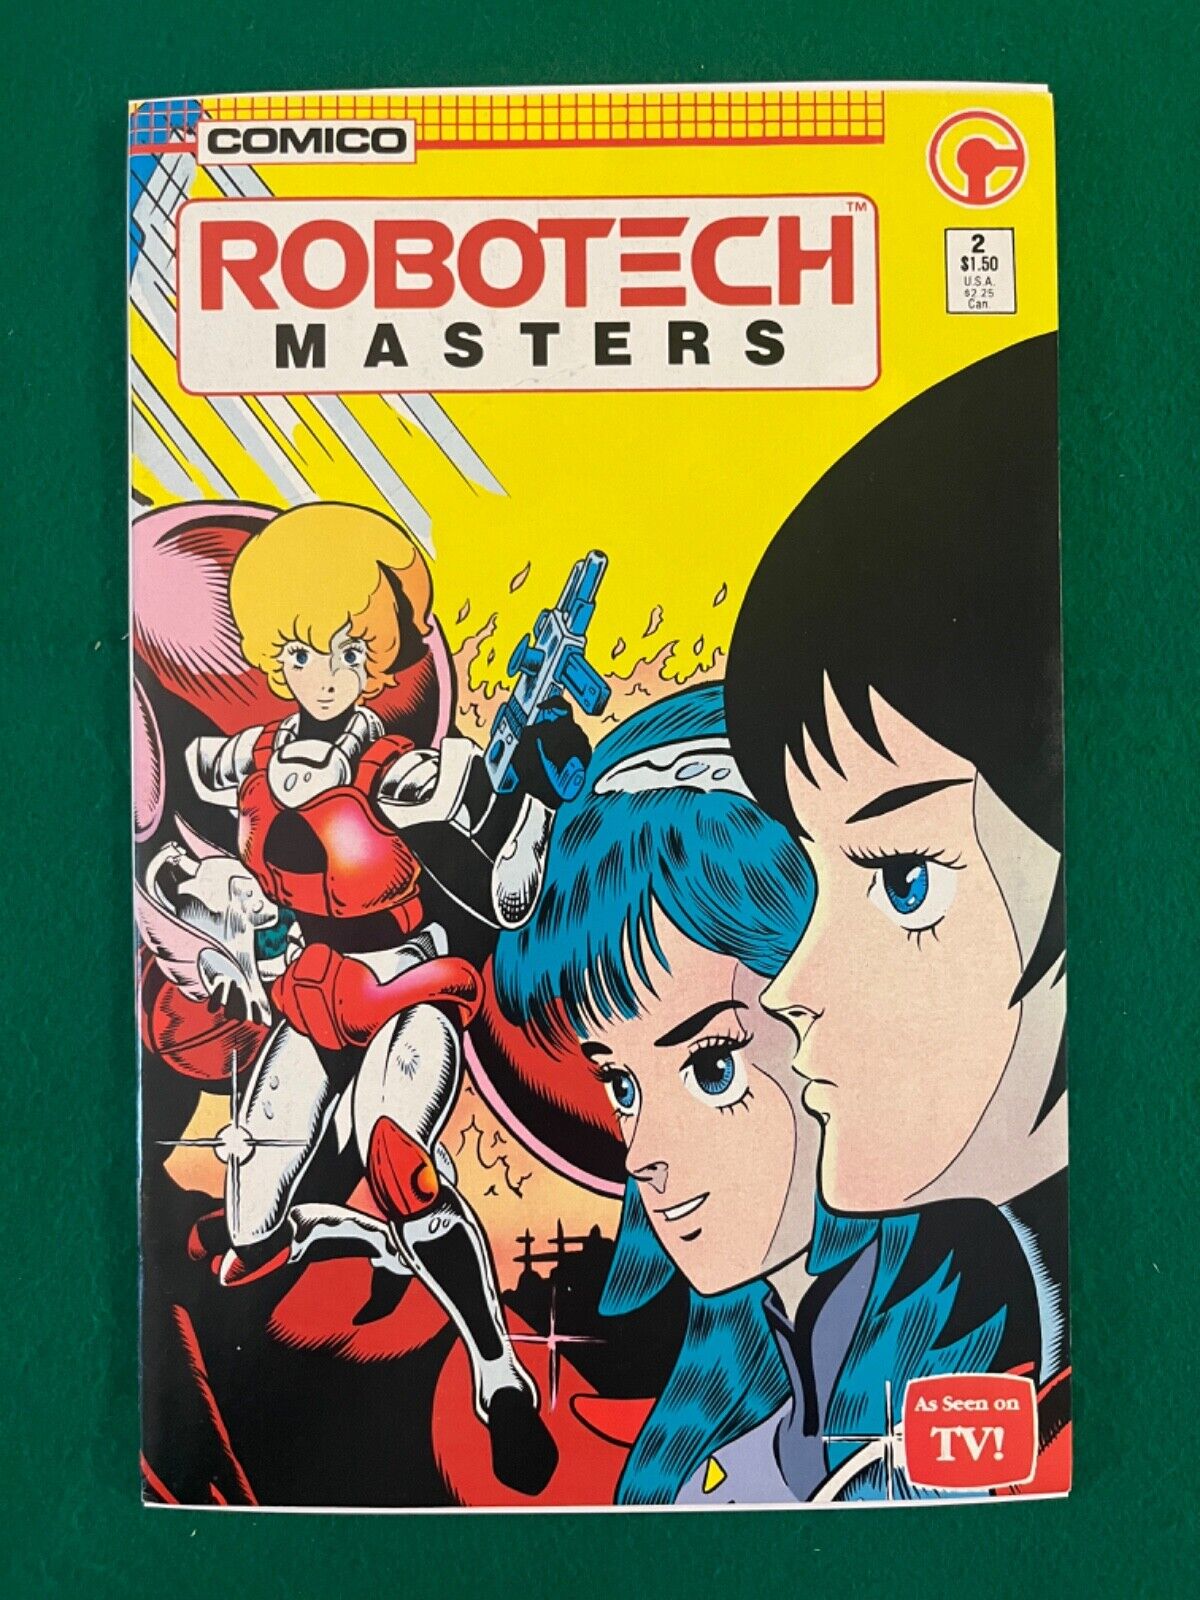 Comico Robotech Masters #2 Aug 1985 (VF+)